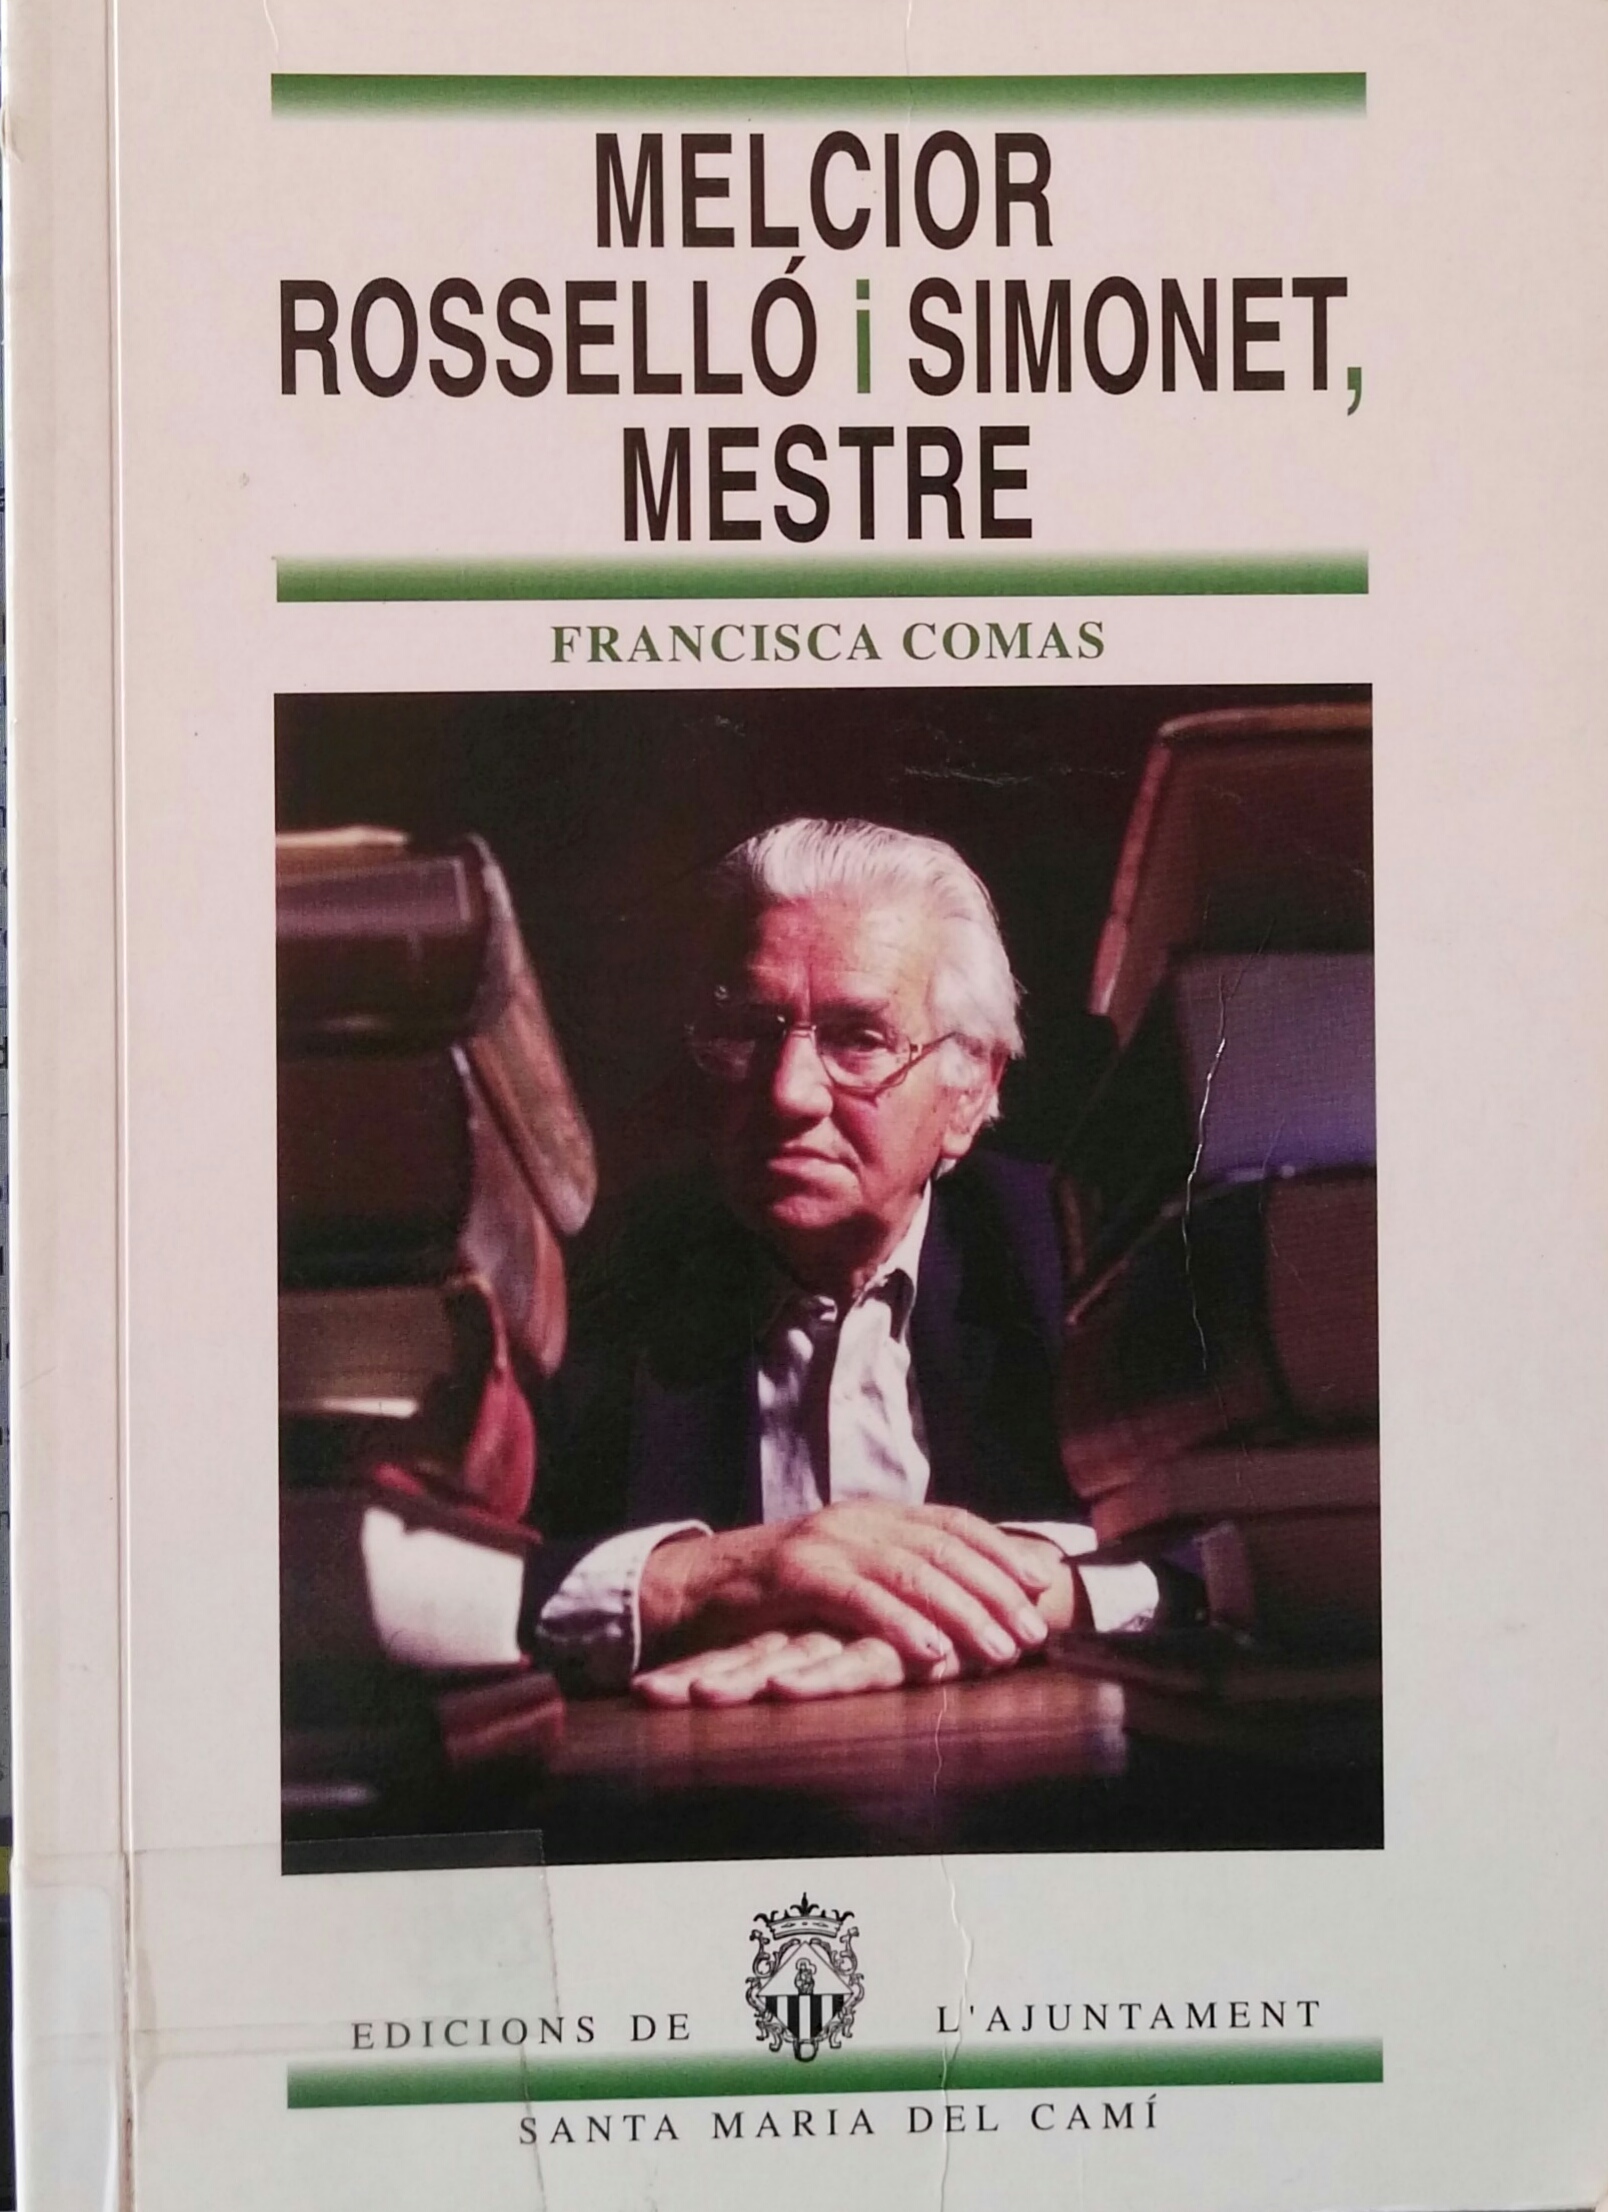 Imagen de portada del libro Melcior Rosselló i Simonet, mestre